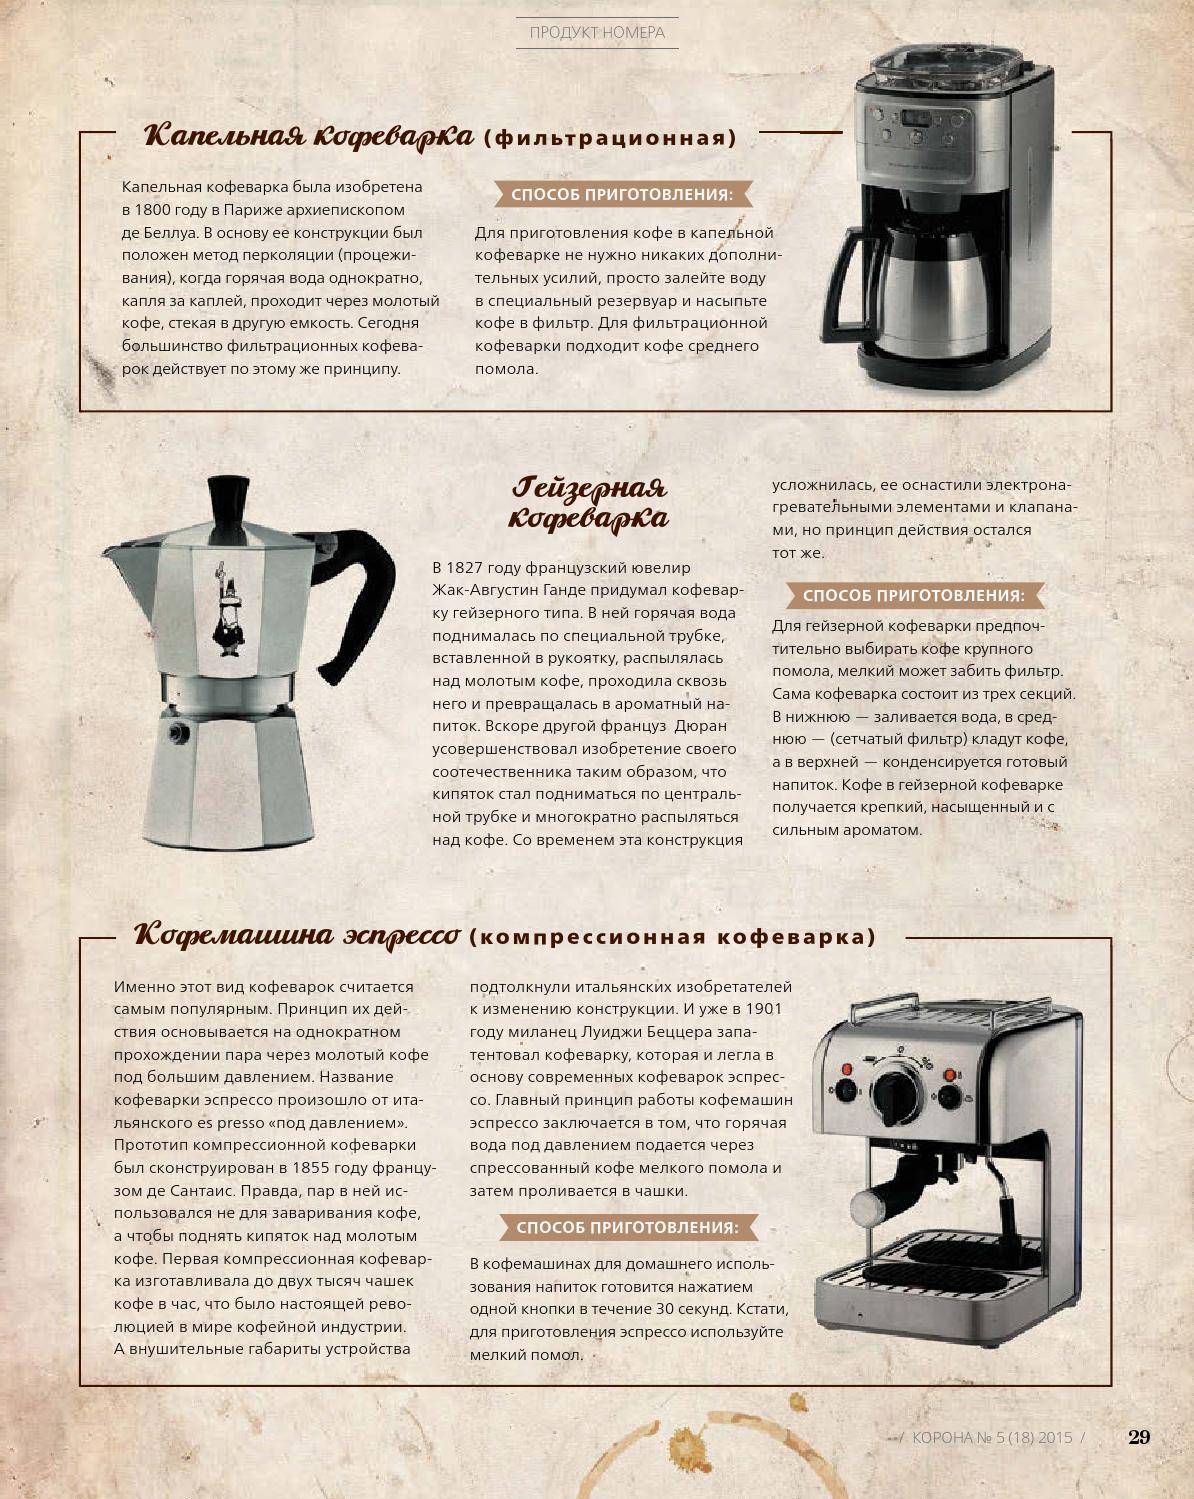 Гейзерная кофеварка как пользоваться: инструкция